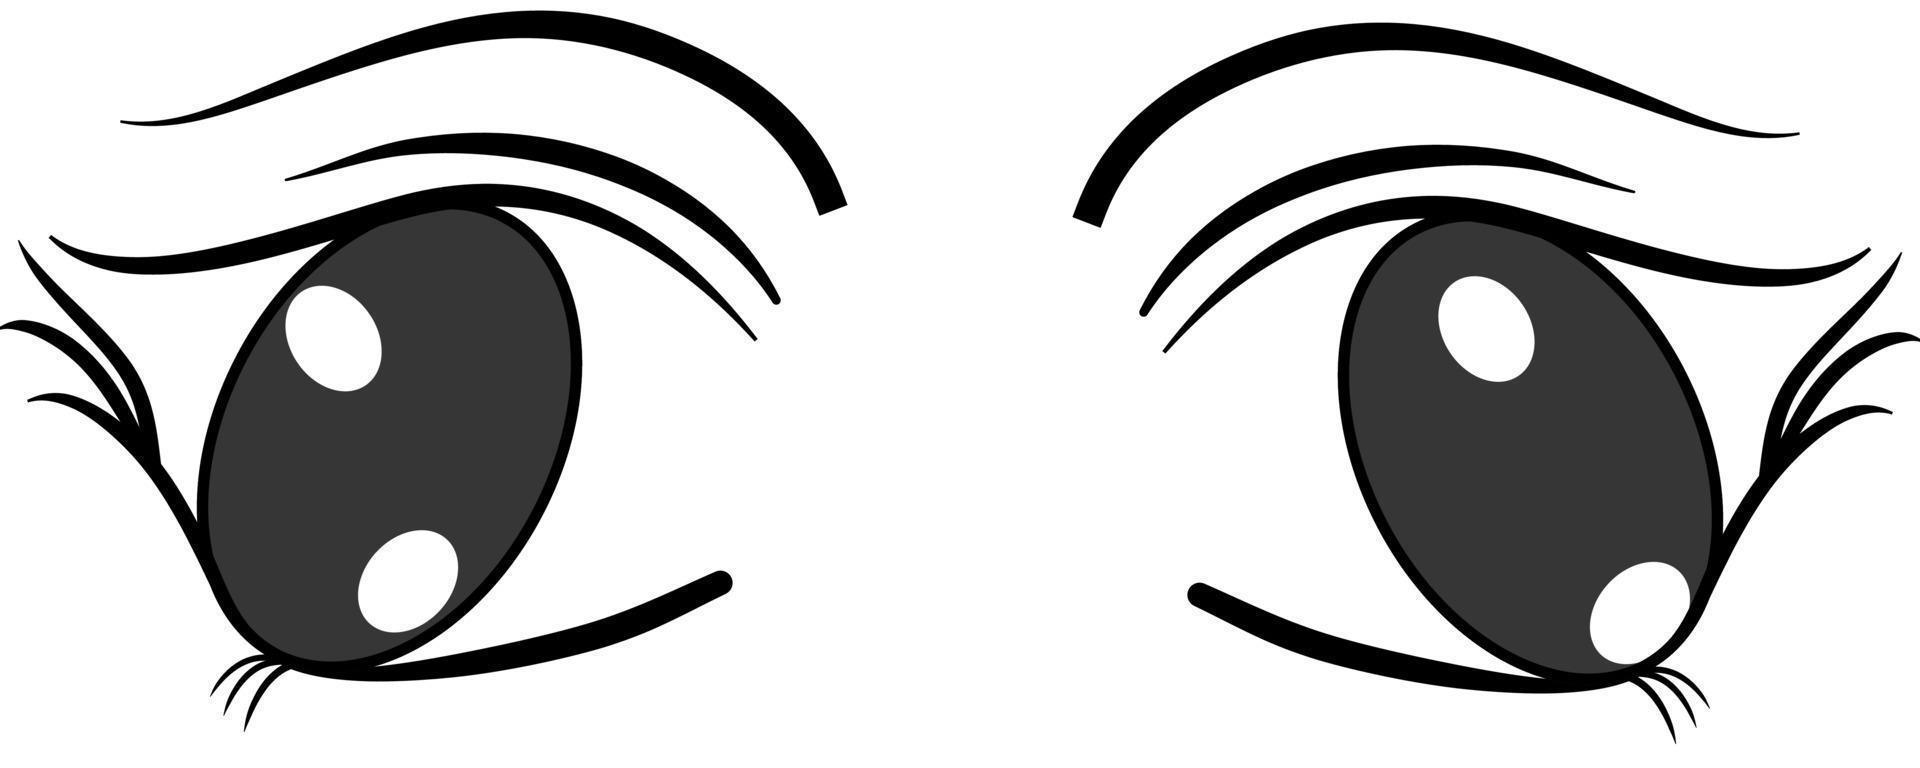 colorida colección de ojos boho aislada en blanco, diseño moderno, ojos de mujer de dibujos animados y cejas con pestañas. ilustración vectorial aislada. se puede utilizar para imprimir camisetas, carteles y tarjetas. ojo de dibujos animados vector